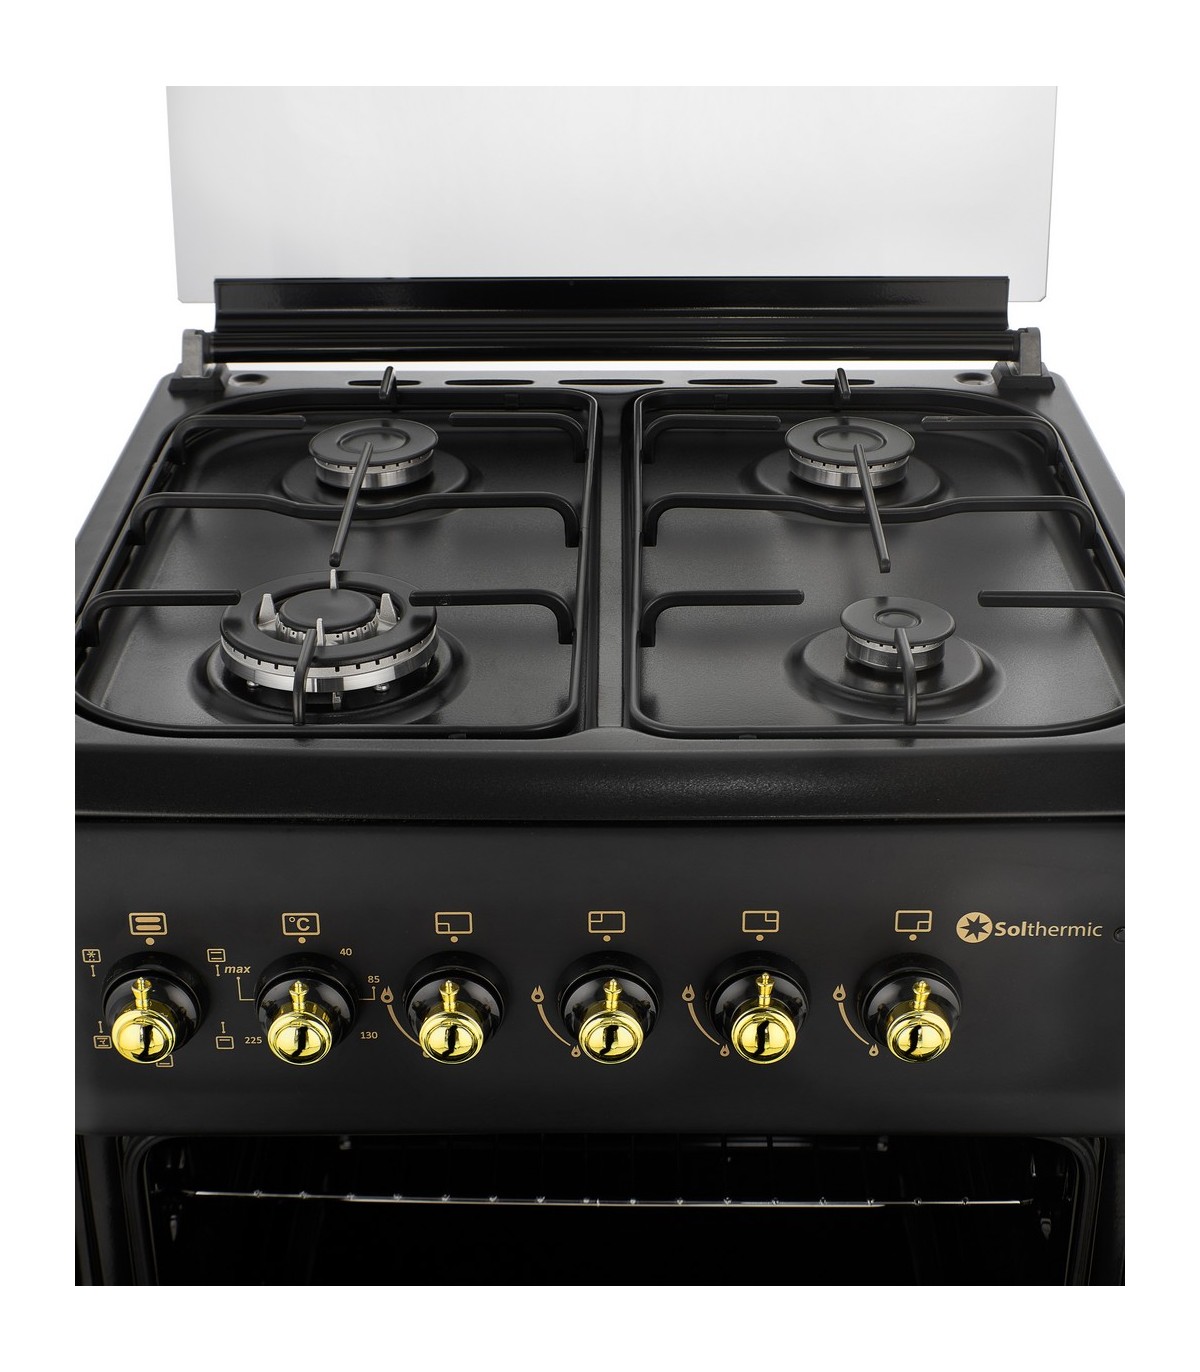 Moderno horno y estufa de gas de diseño clásico en tonos oscuros